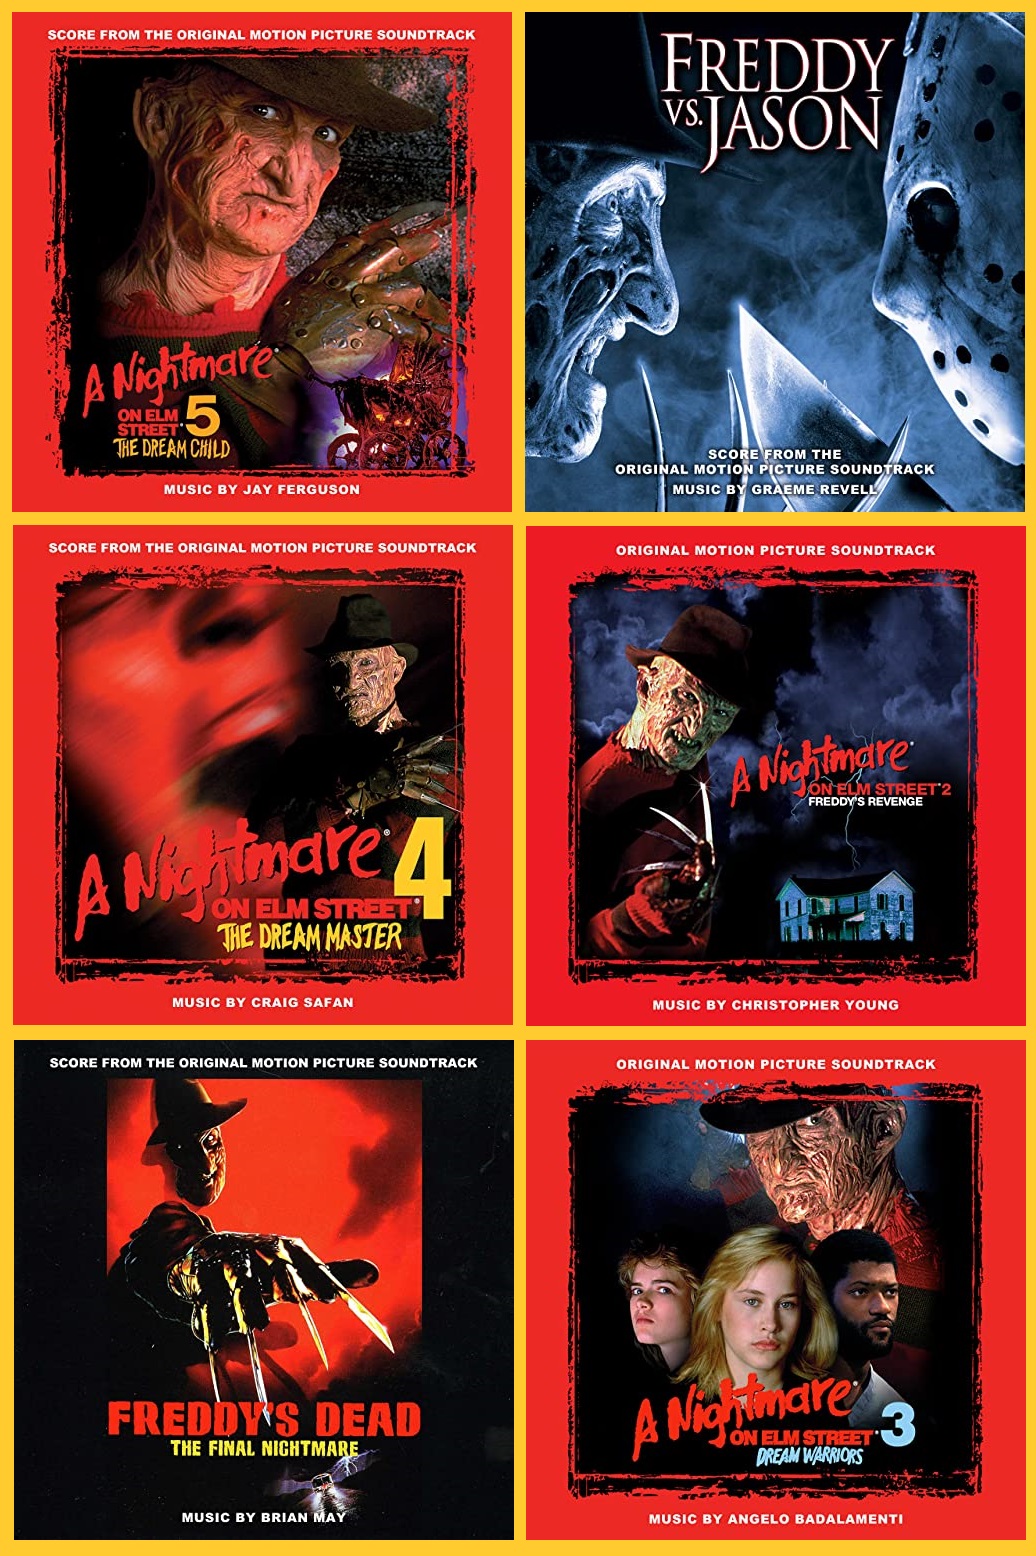 A Nightmare on Elm Street series